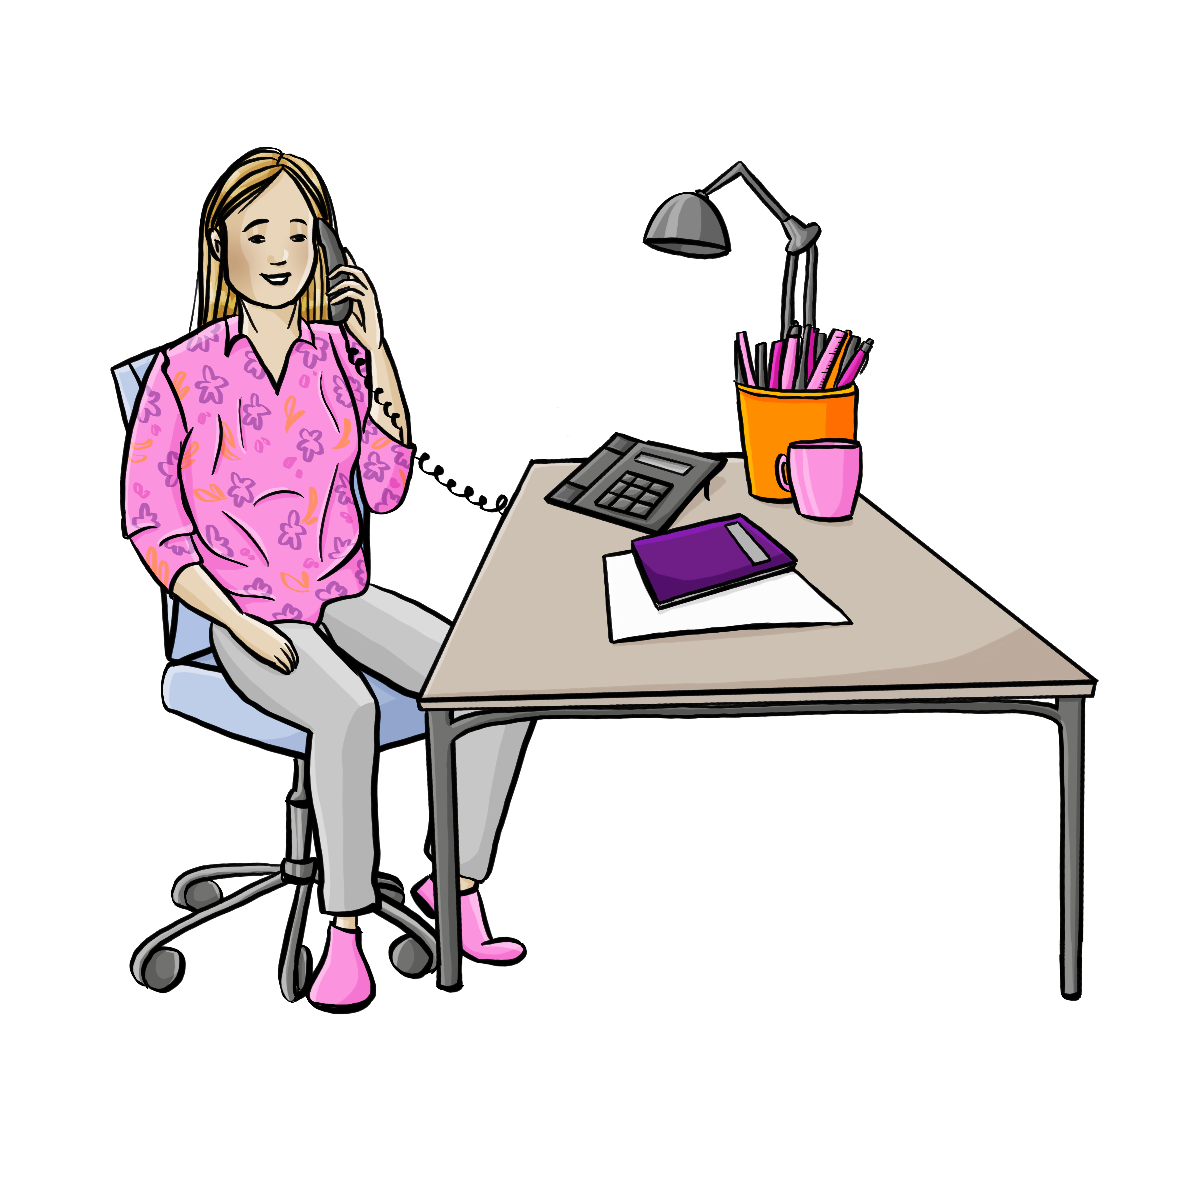 Eine Frau sitzt am Schreibtisch und hält sich einen Telefonhörer ans Ohr. 